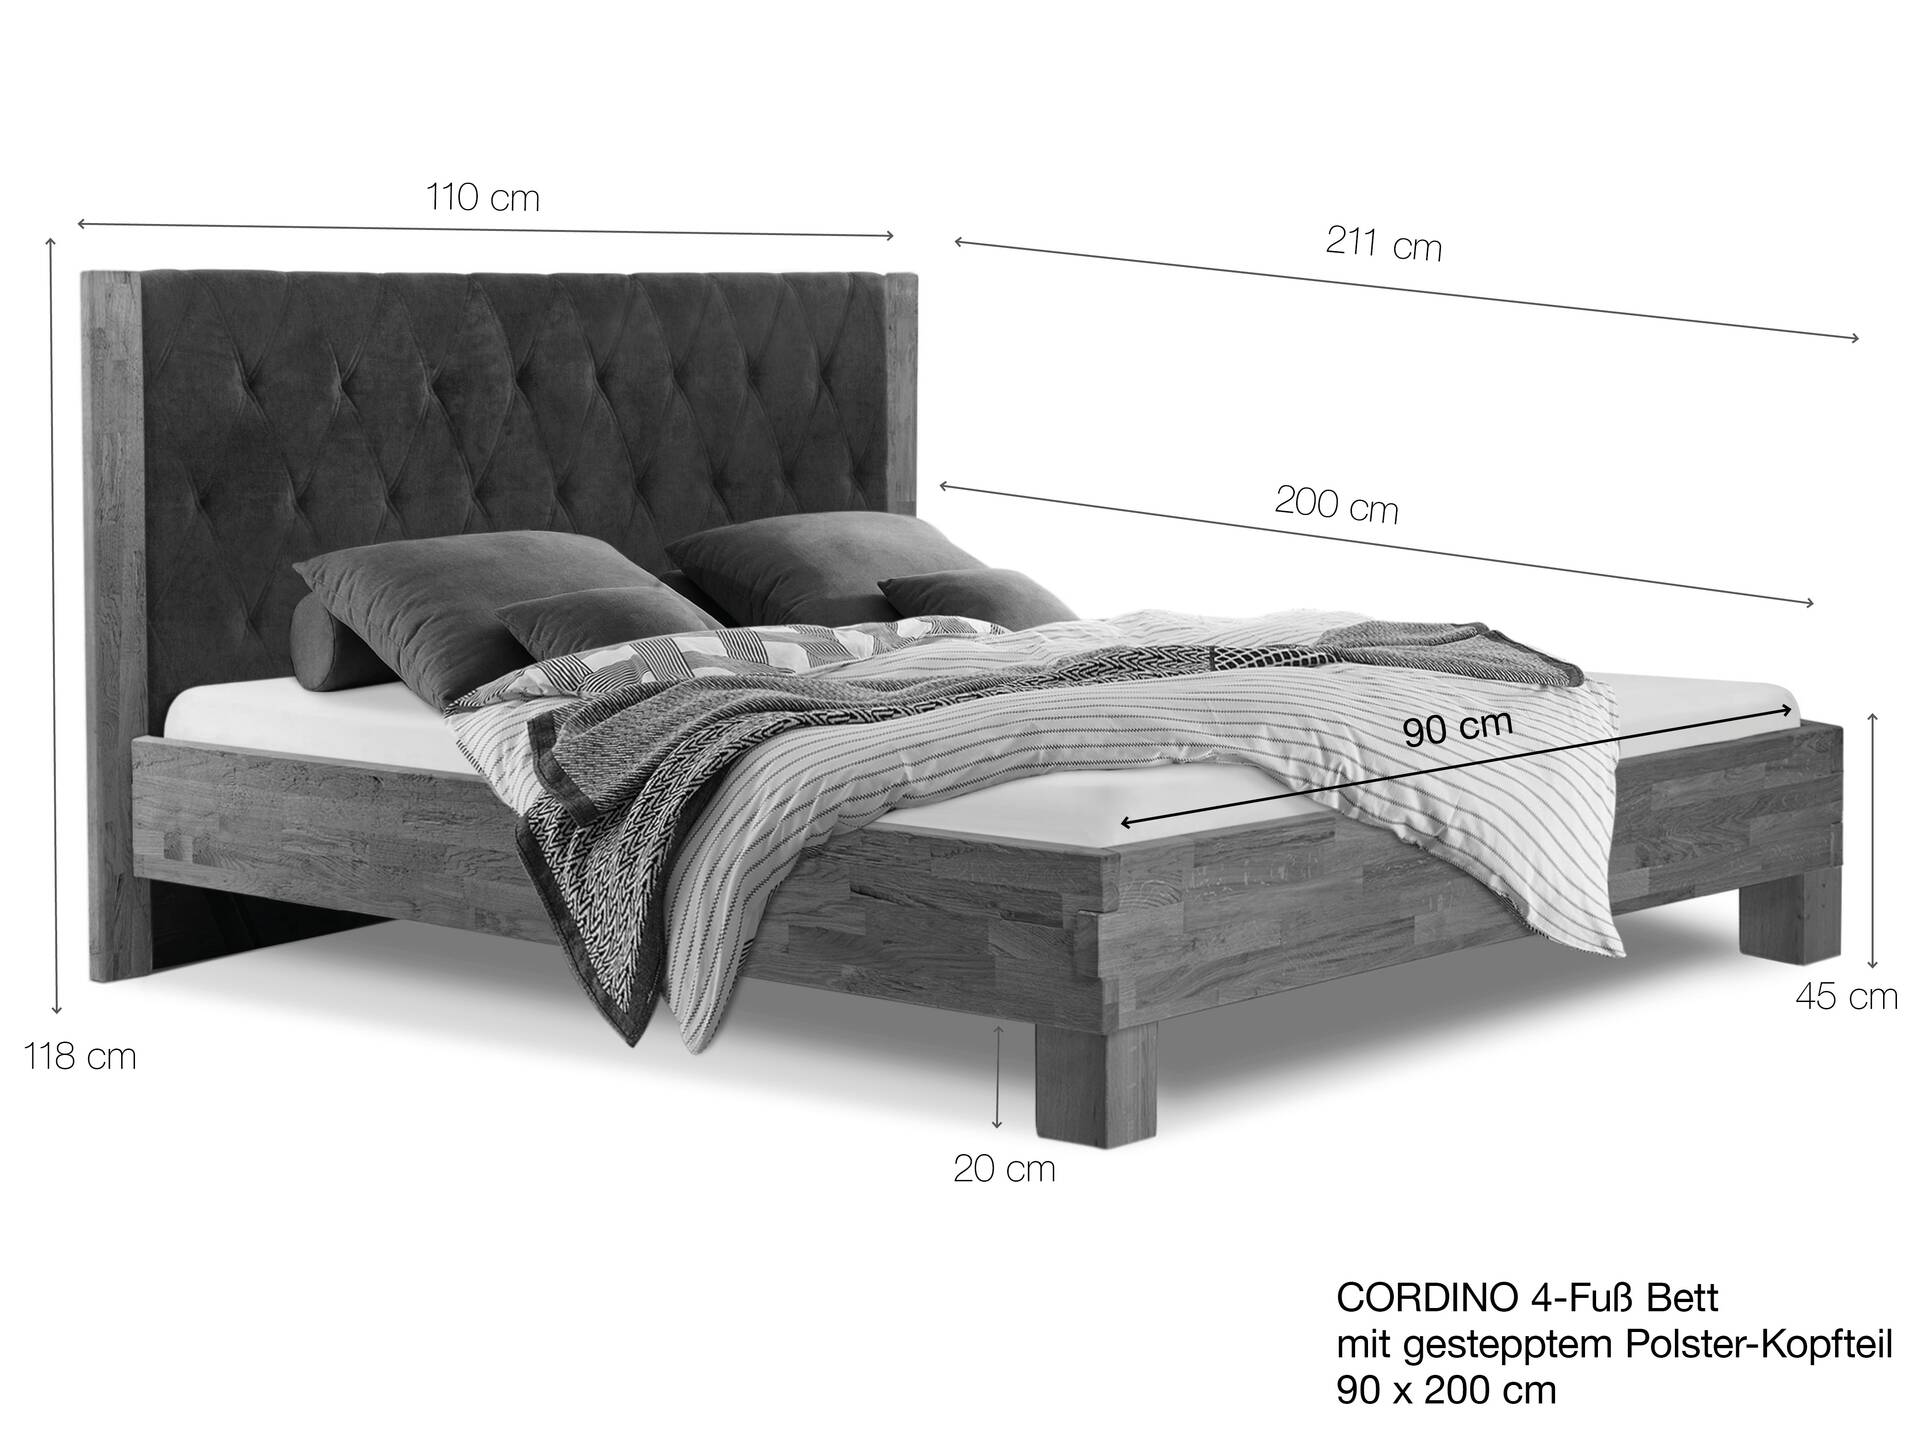 CORDINO 4-Fuß-Bett aus Eiche mit gestepptem Polster-Kopfteil, Material Massivholz 90 x 200 cm | Eiche lackiert | Kunstleder Schwarz | gebürstet